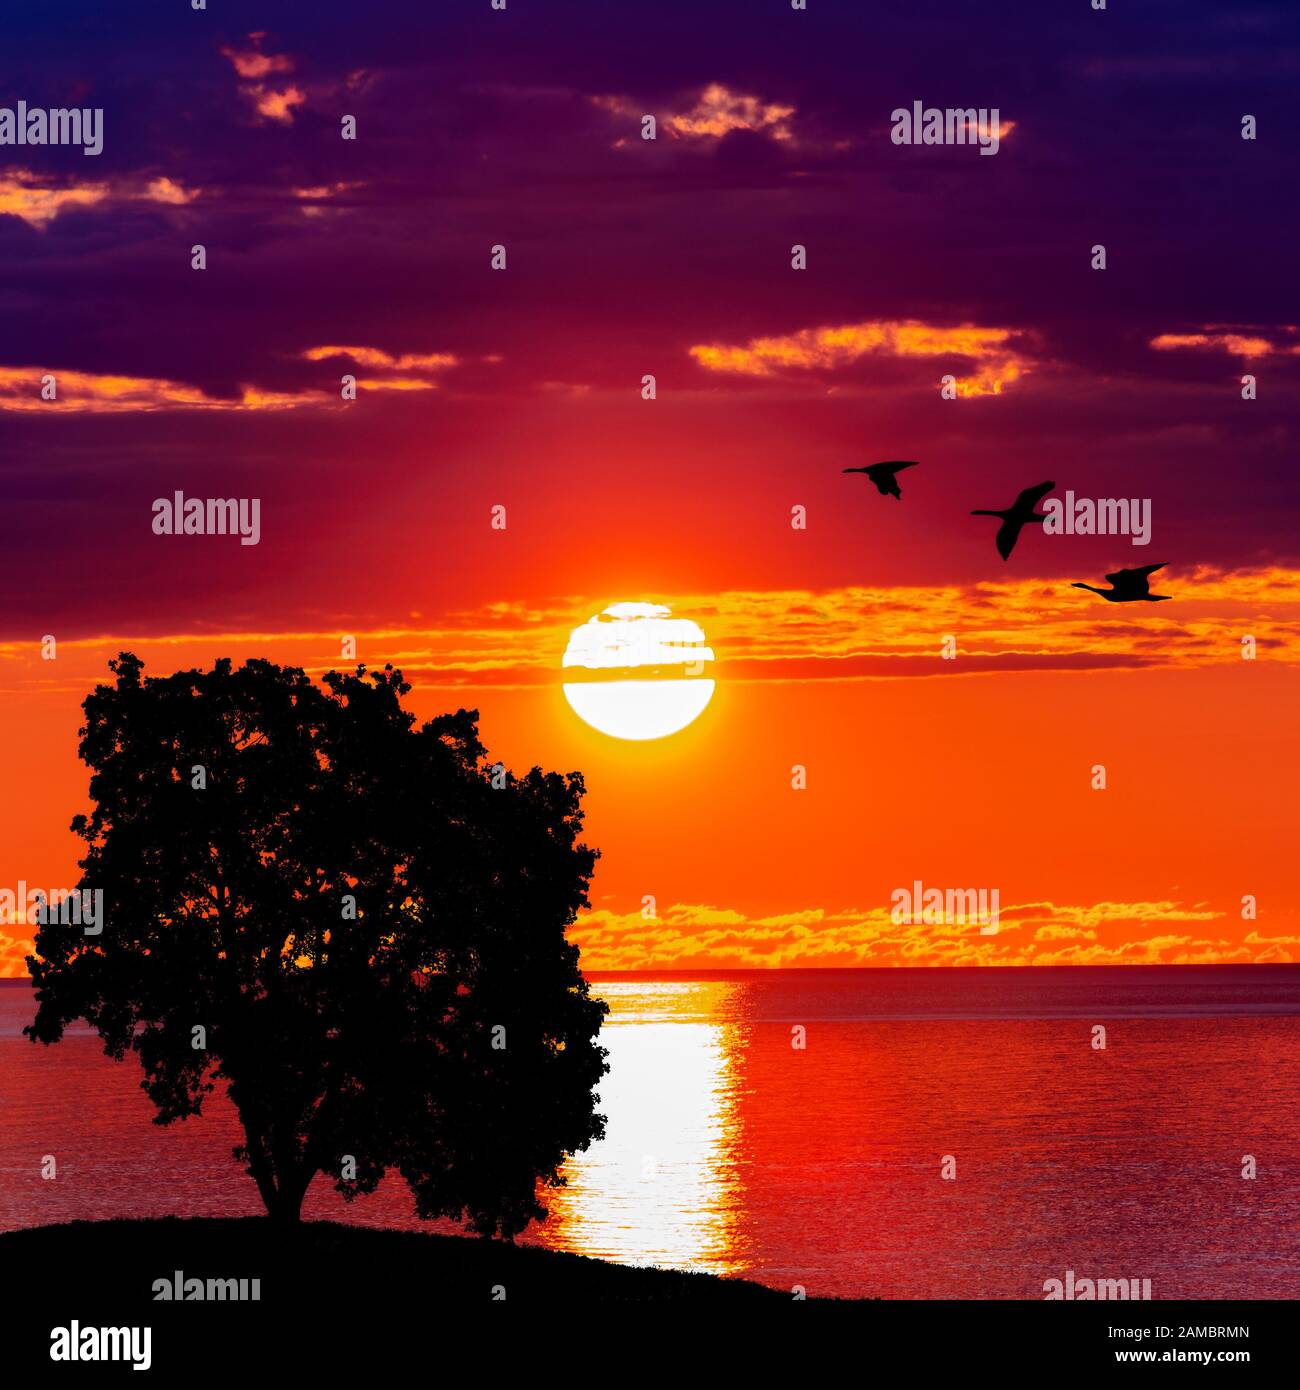 Baum und Vögel bei Sonnenuntergang. Schöner Sonnenaufgang. Hintergrund der Natur Stockfoto